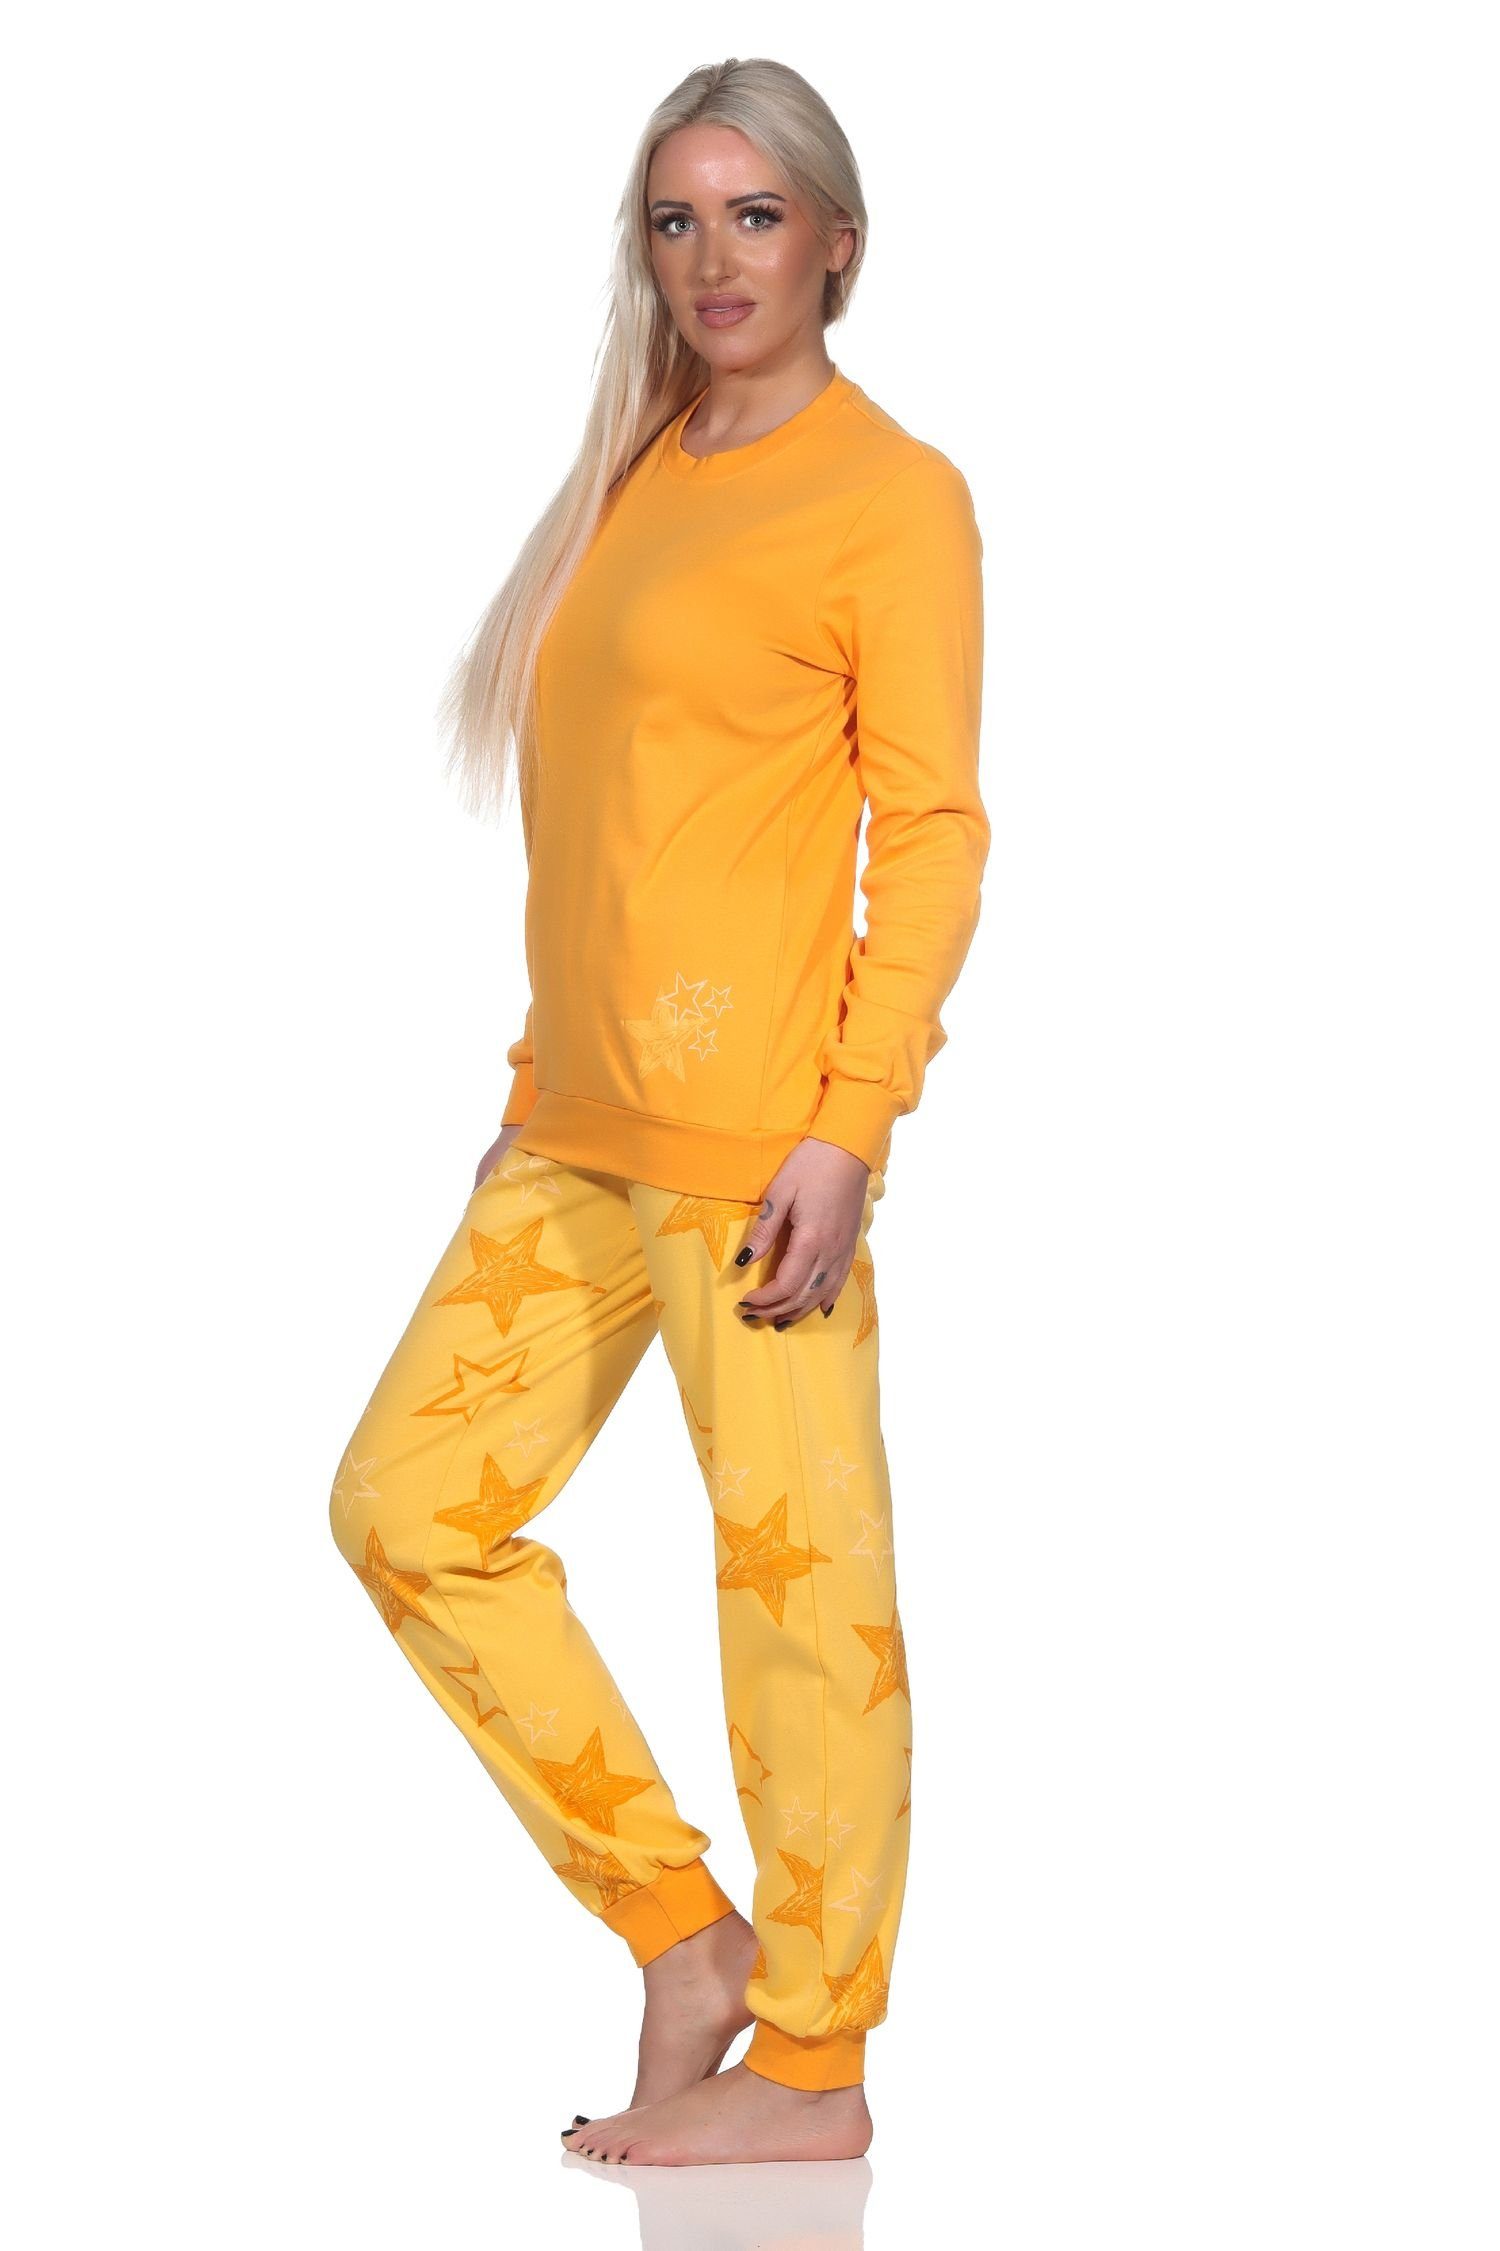 Normann Normann Optik Kuschel orange Qualität Damen Interlock Sterne Schlafanzug Pyjama in